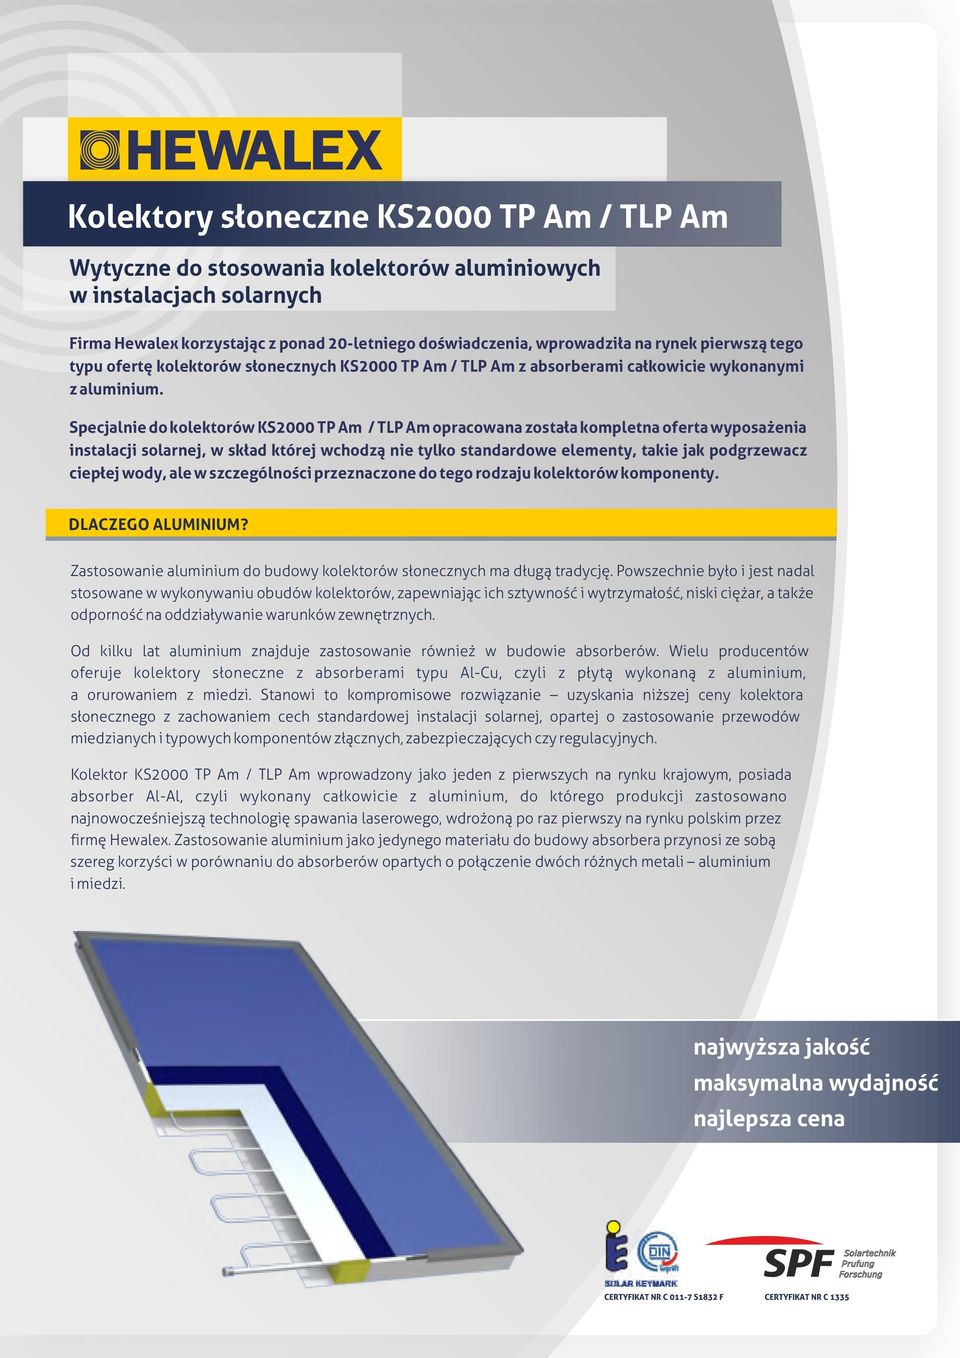 Specjalnie do kolektorów KS000 TP Am / TLP Am opracowana została kompletna oferta wyposażenia instalacji solarnej, w skład której wchodzą nie tylko standardowe elementy, takie jak podgrzewacz ciepłej